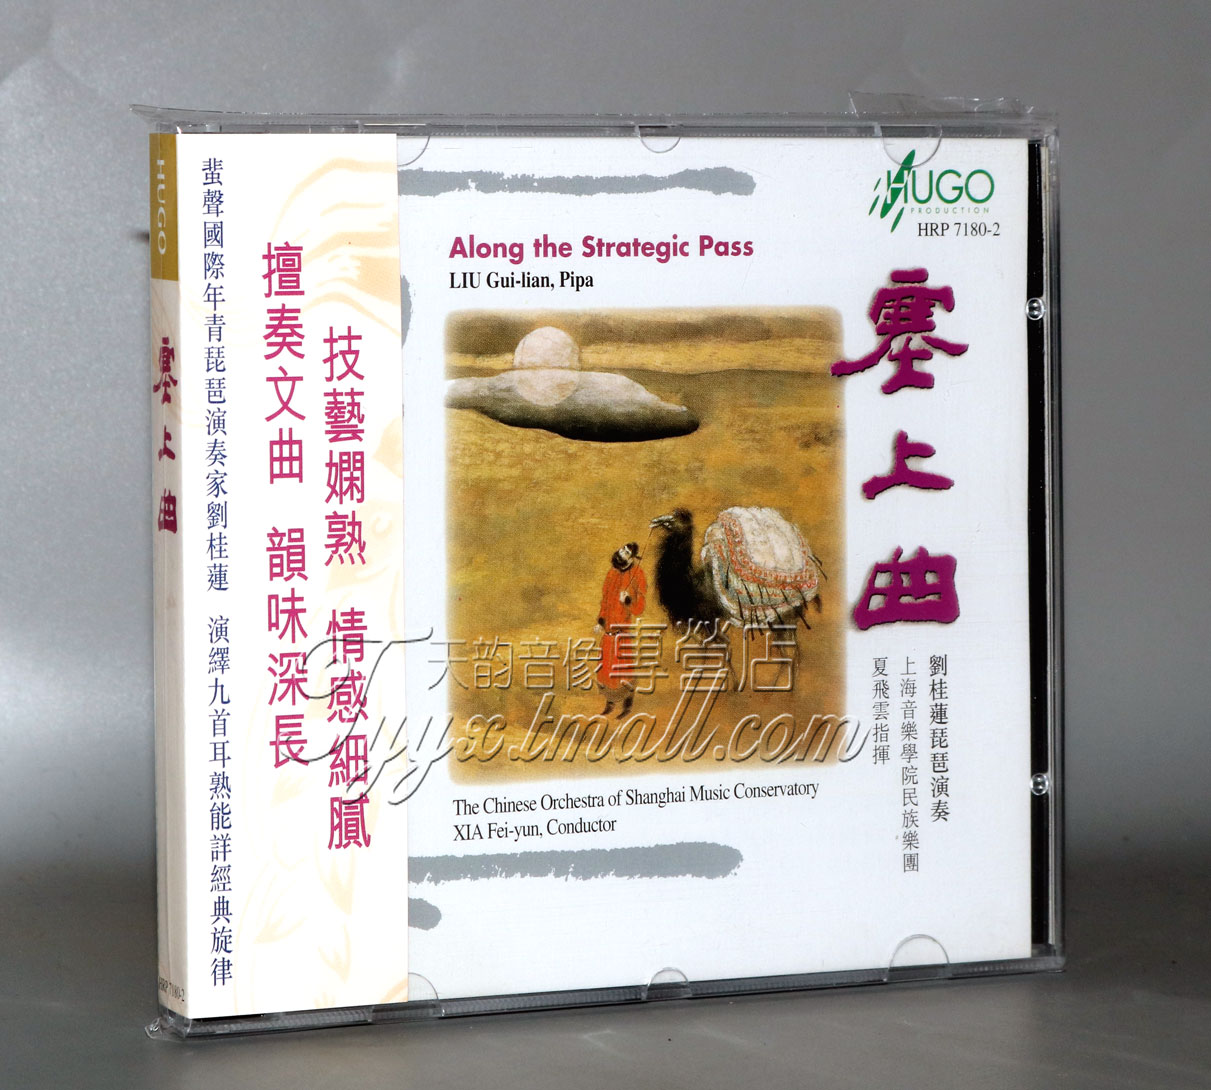 正版 雨果唱片 上海音乐学院民族乐团 塞上曲 琵琶/刘桂莲 1CD